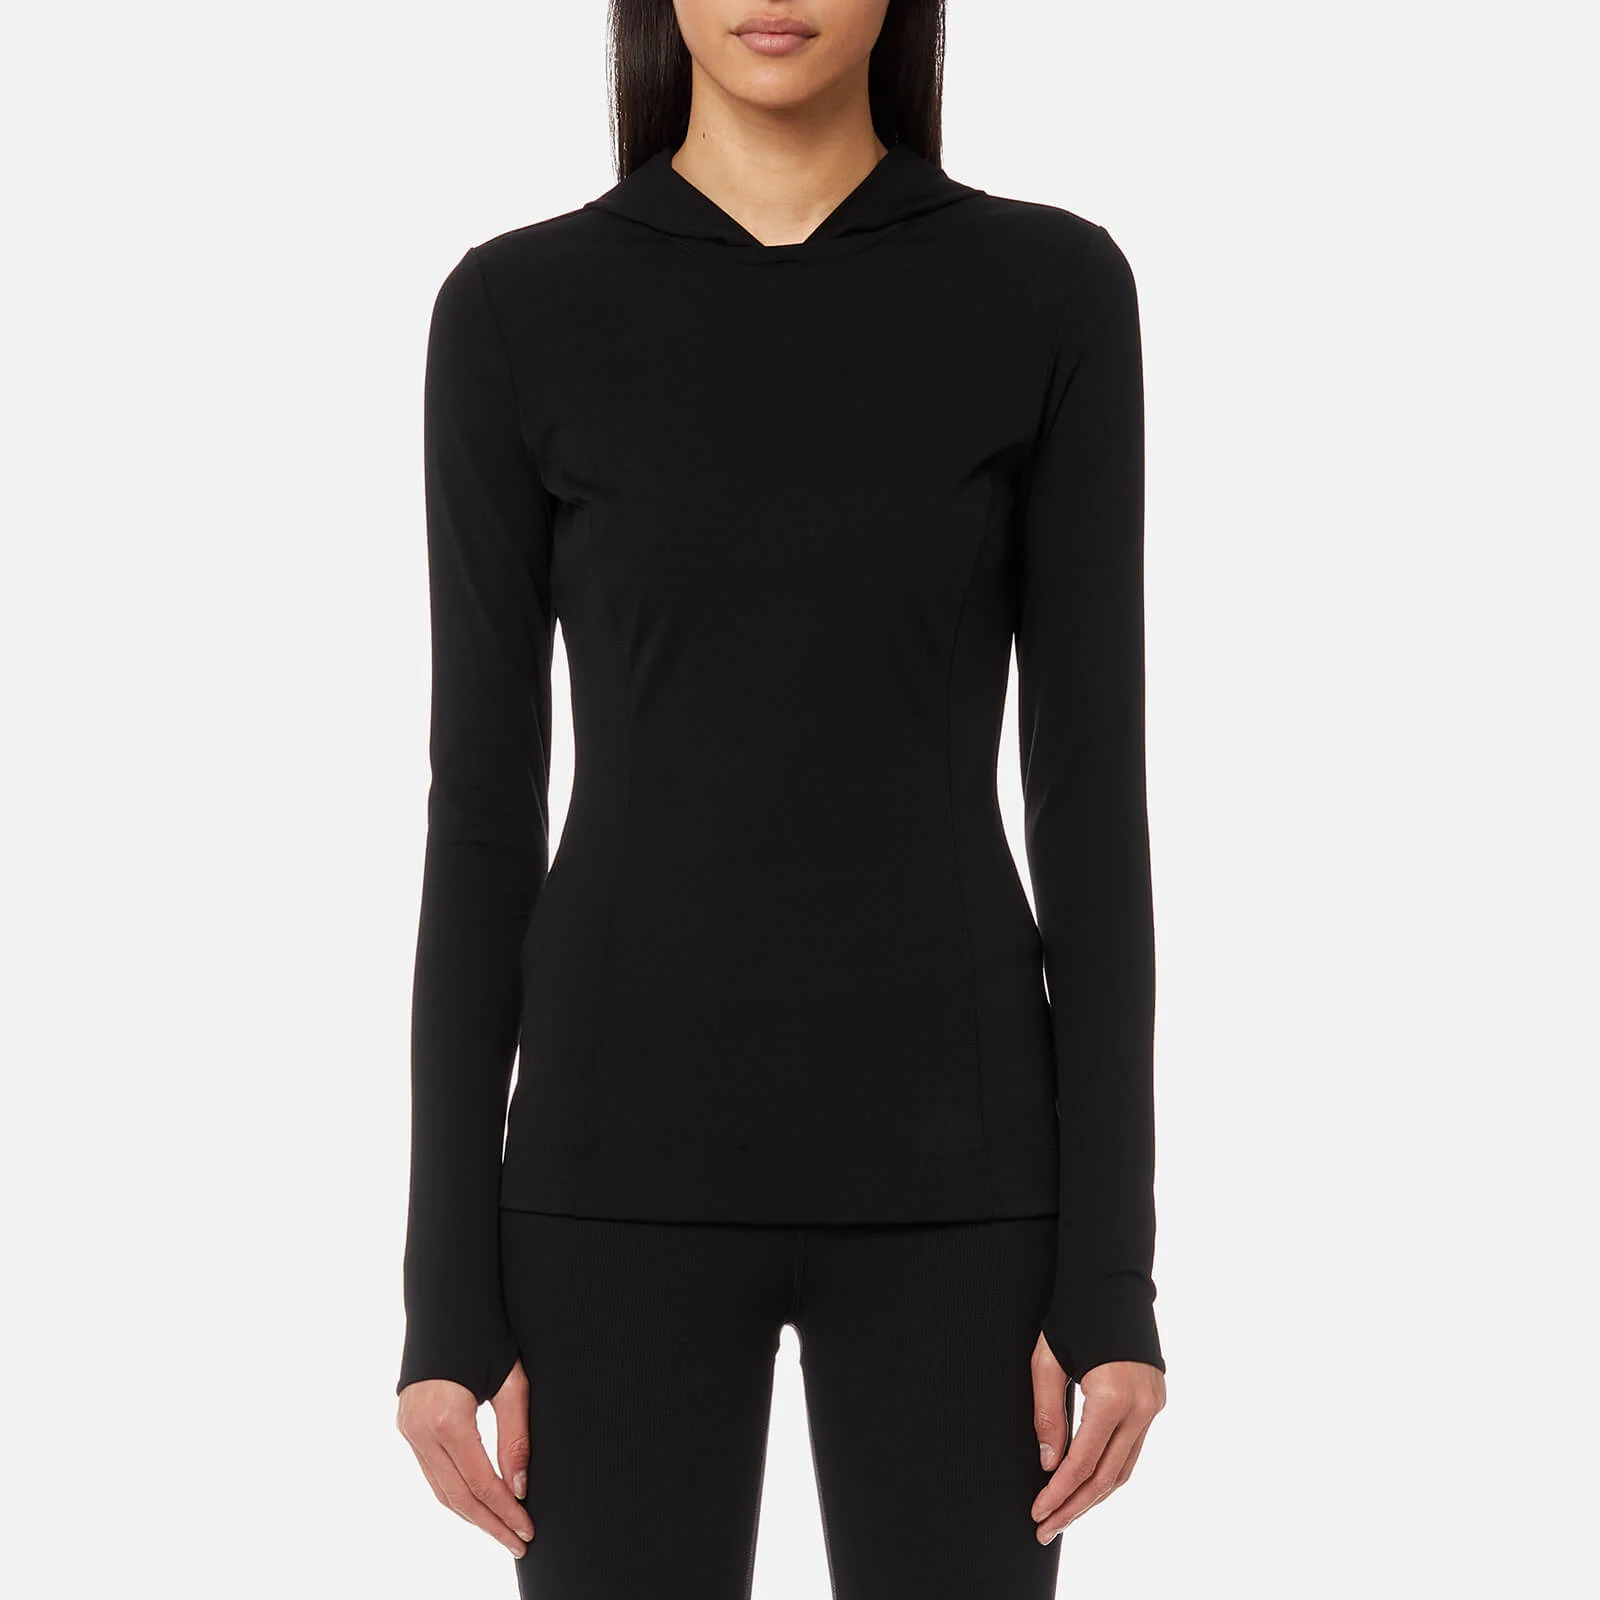 NO KA'OI Women's Olu Olu Long Sleeve Hooded T-Shirt - Black Image 1